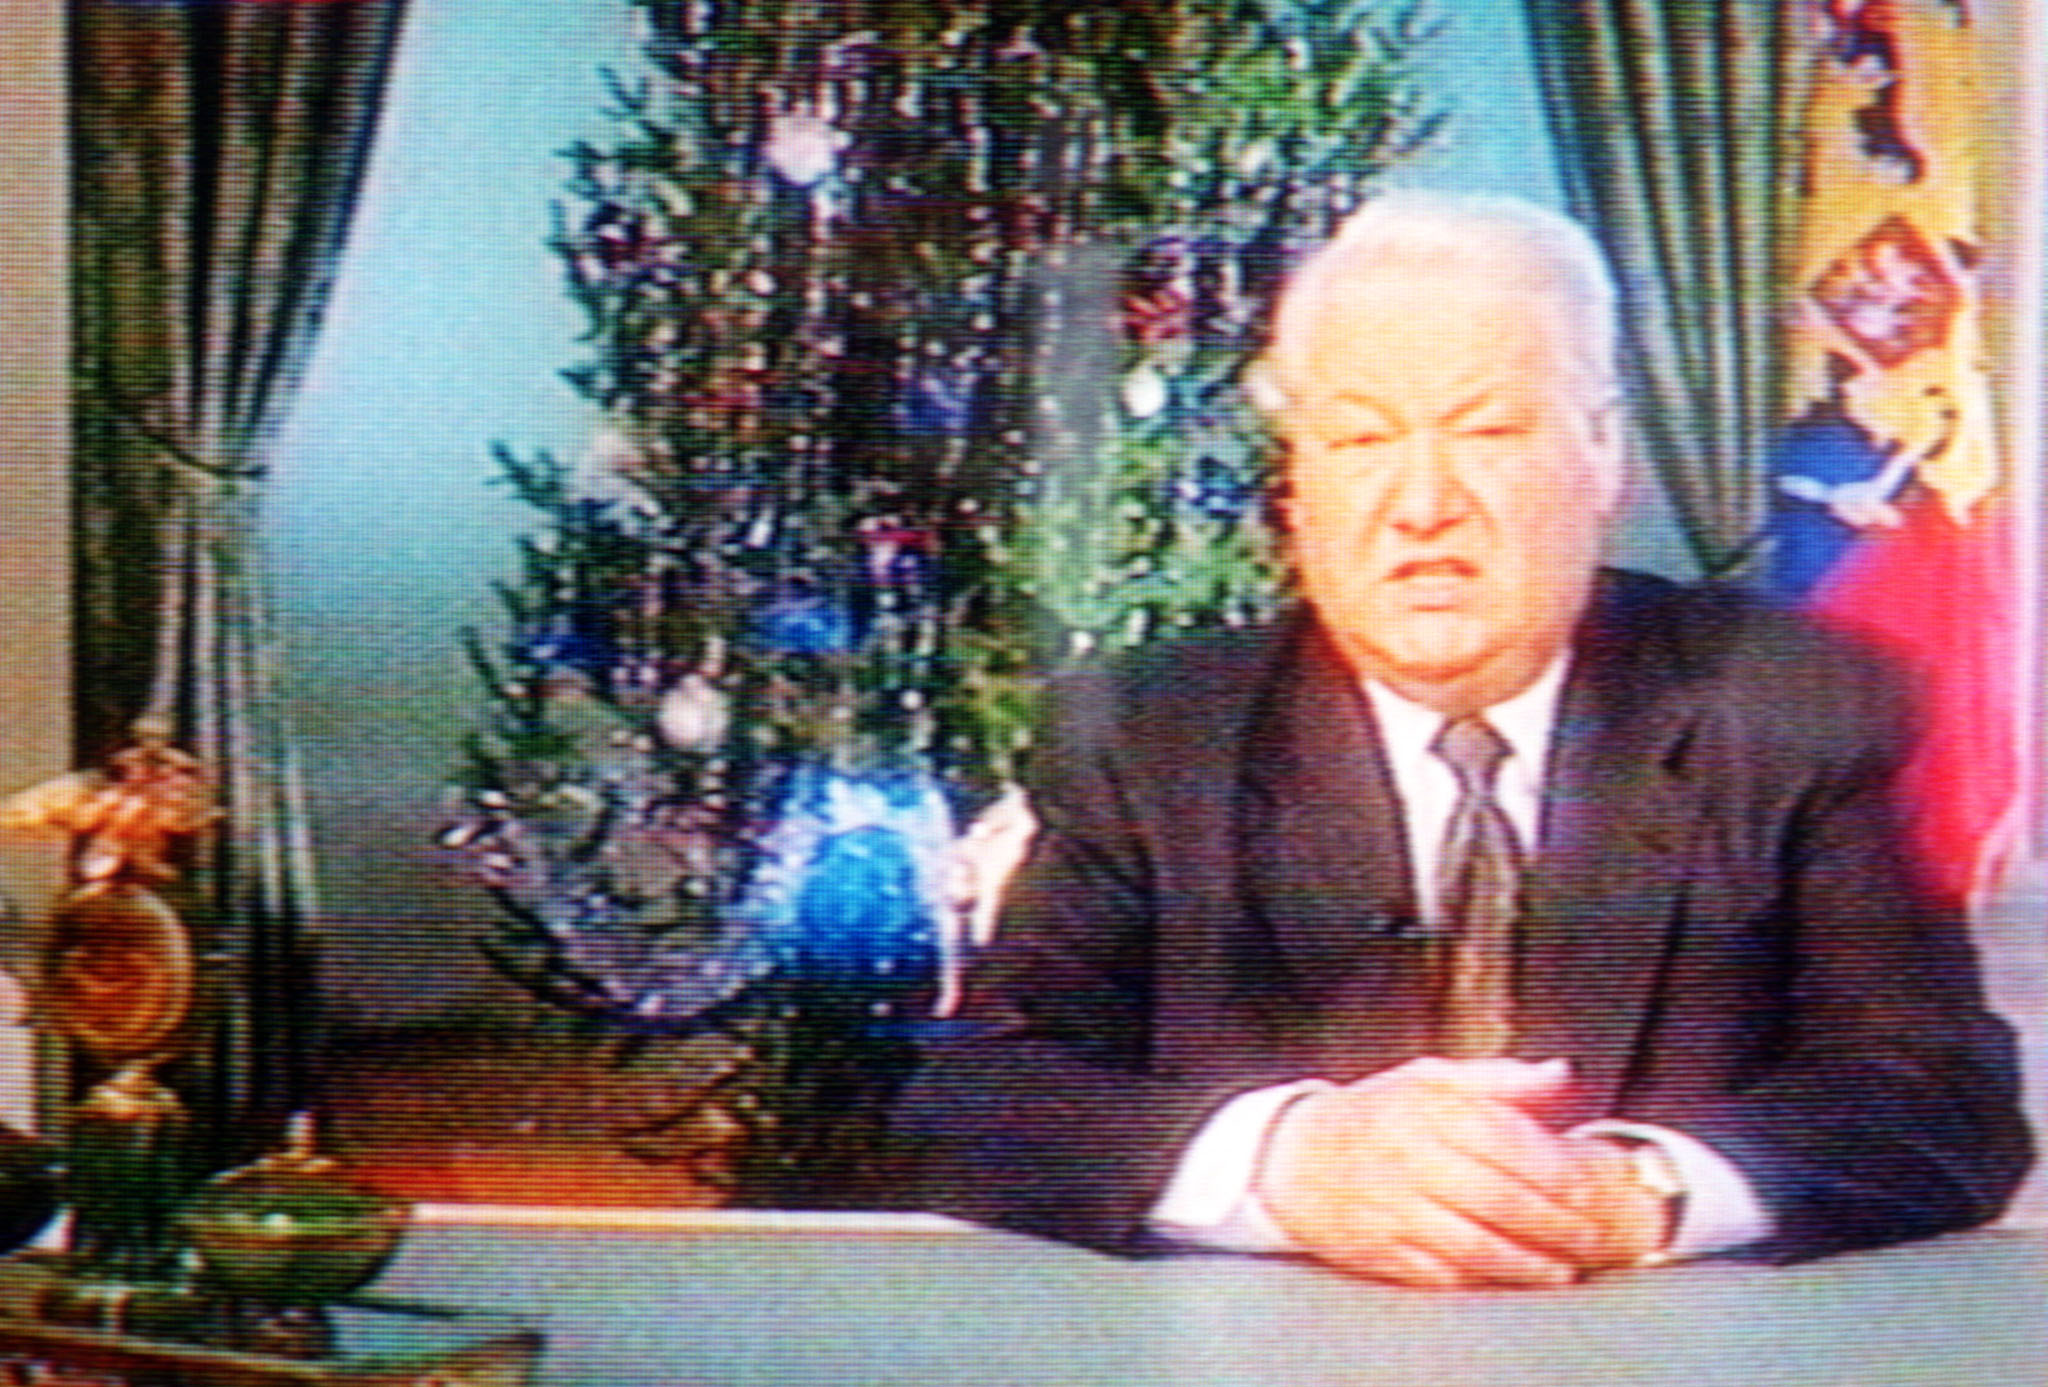 Обращение 2000 года. Новогоднее обращение Ельцина 1995.